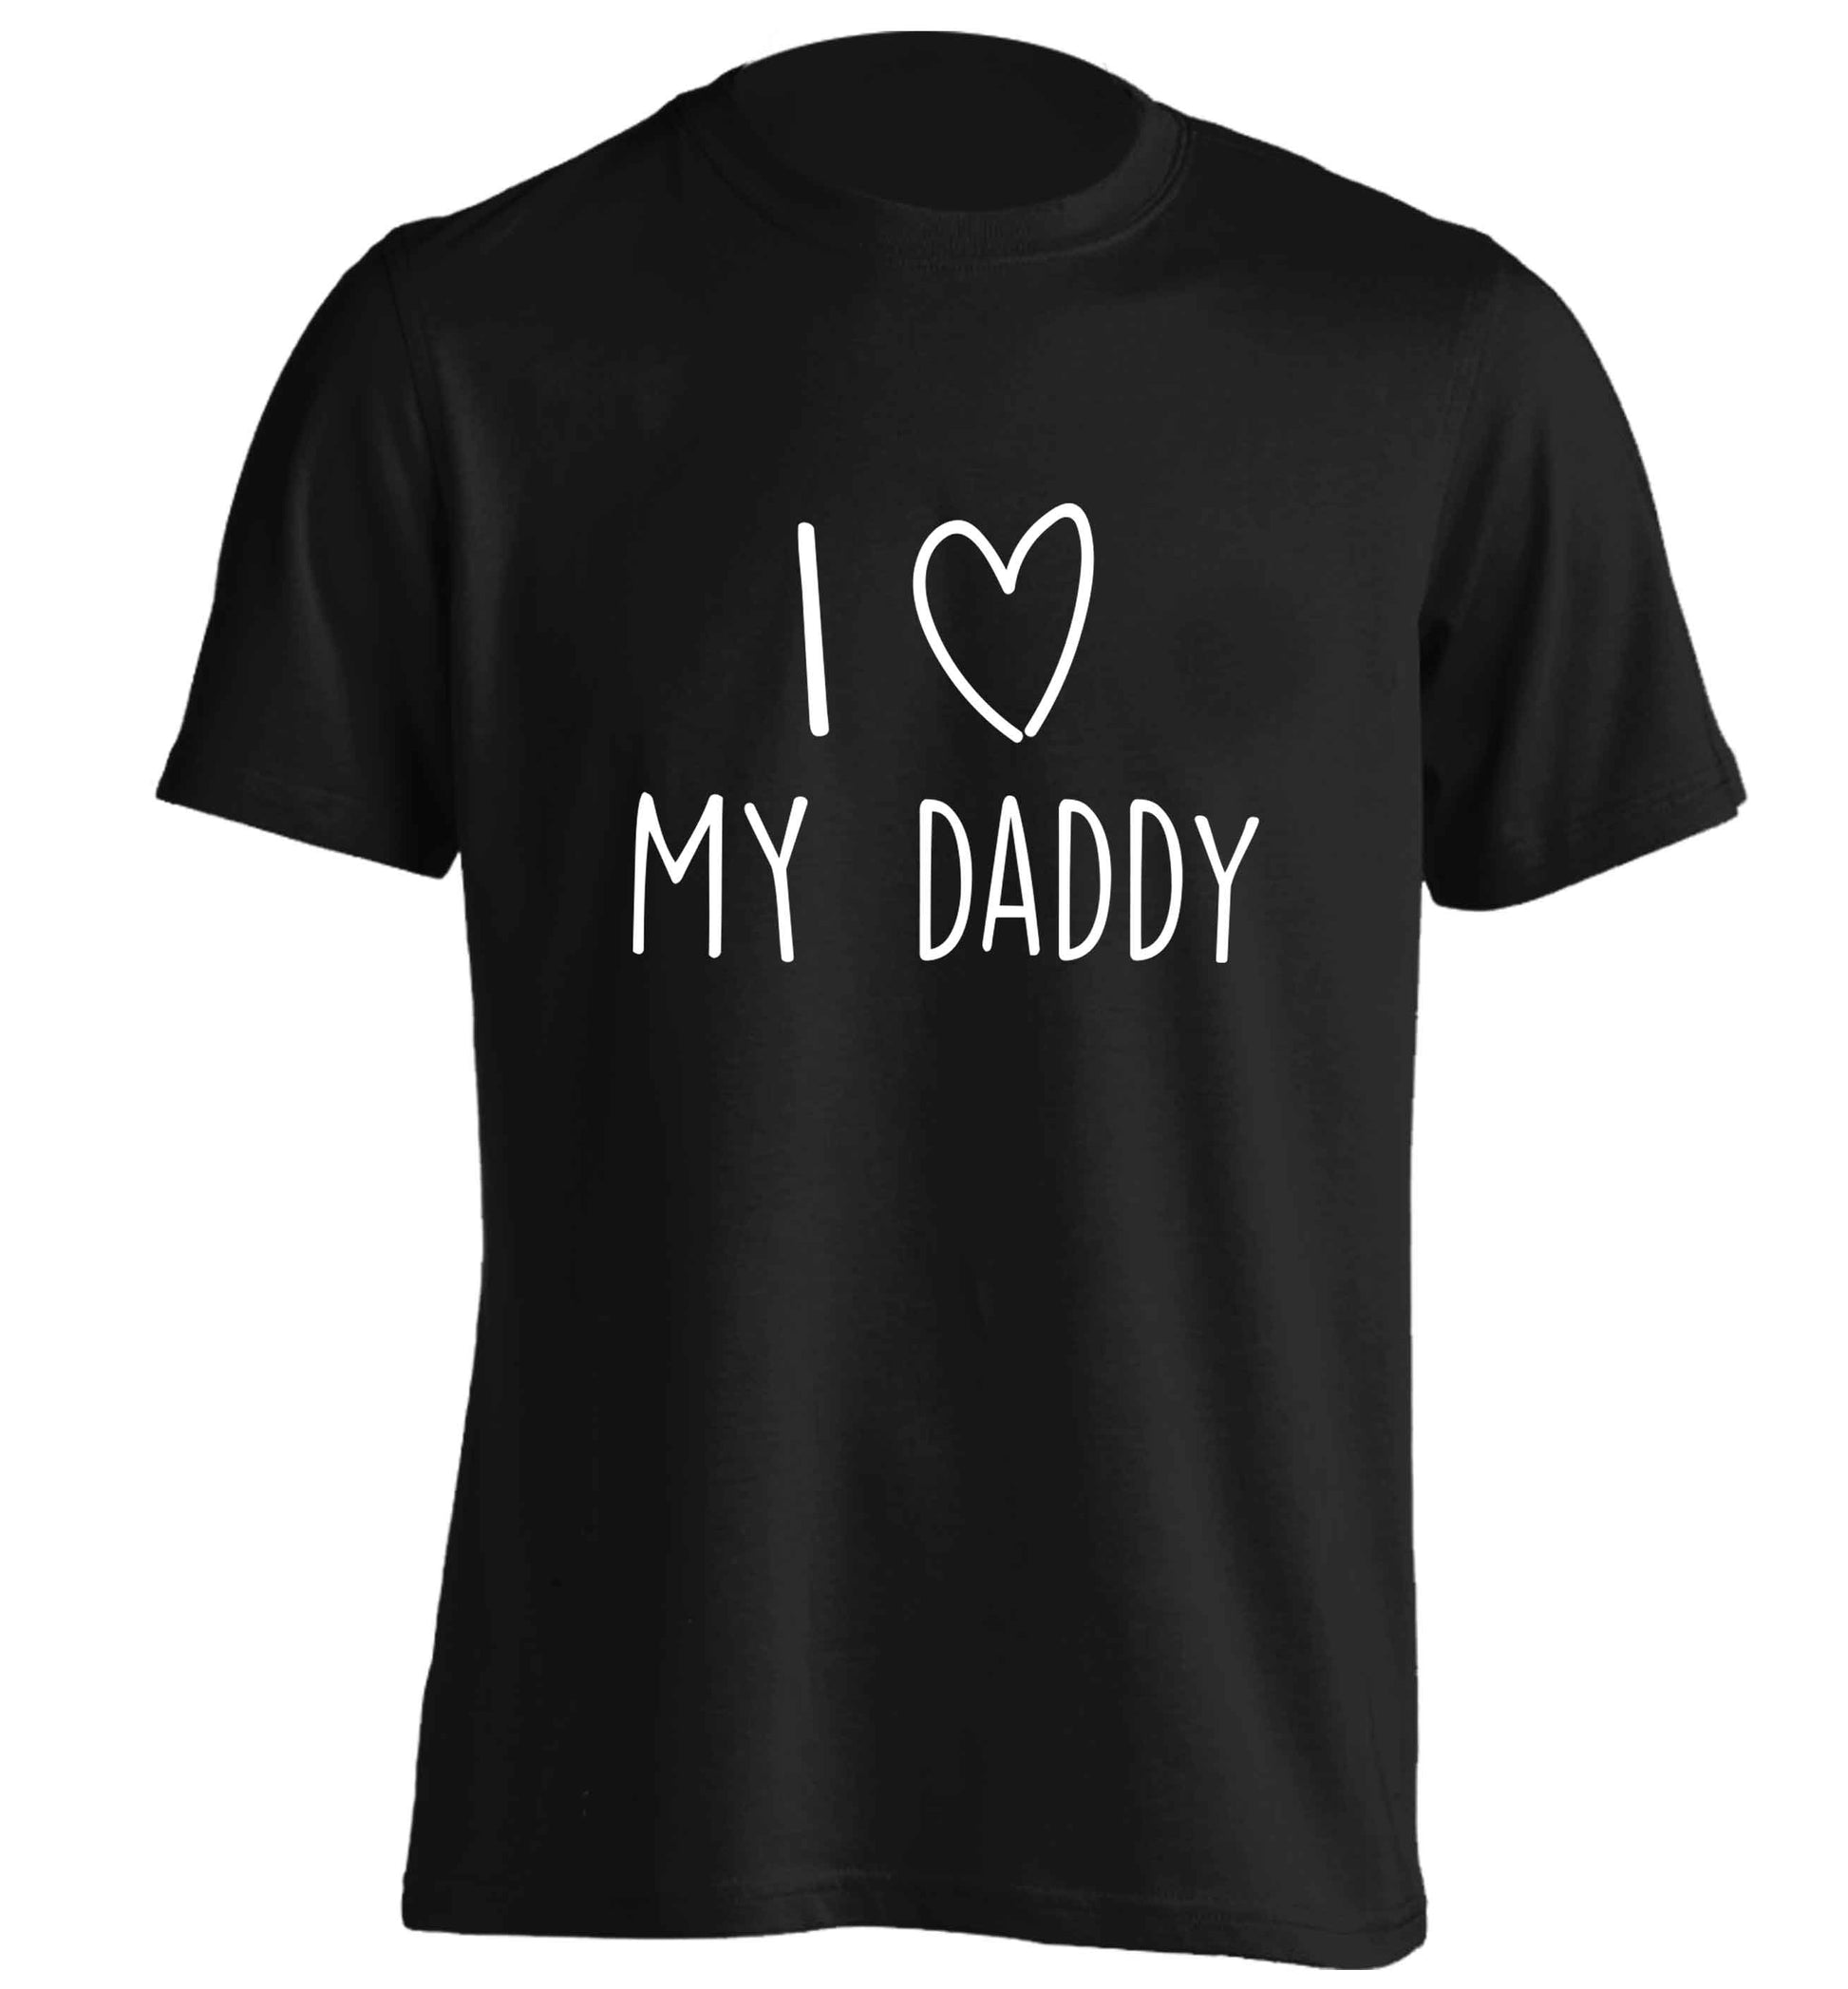 I love my daddy adults unisex black Tshirt 2XL